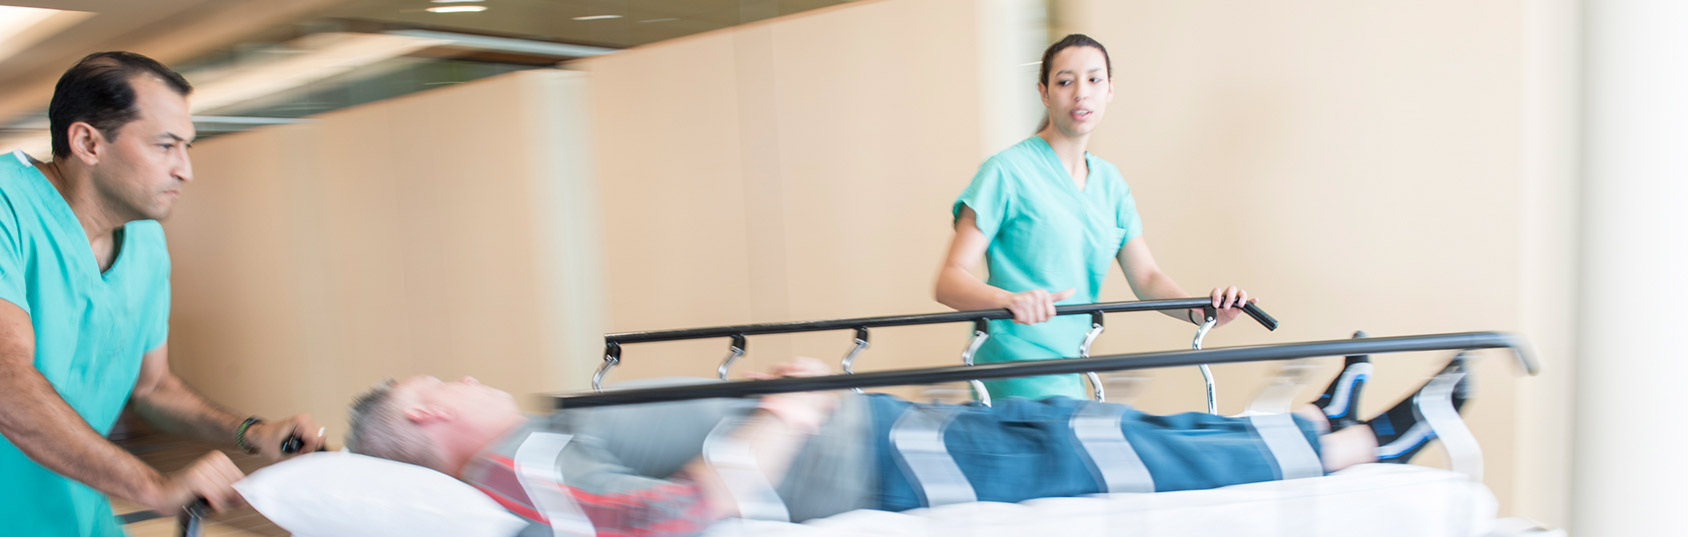 Due professionisti della salute portano di corsa una barella in terapia intensiva